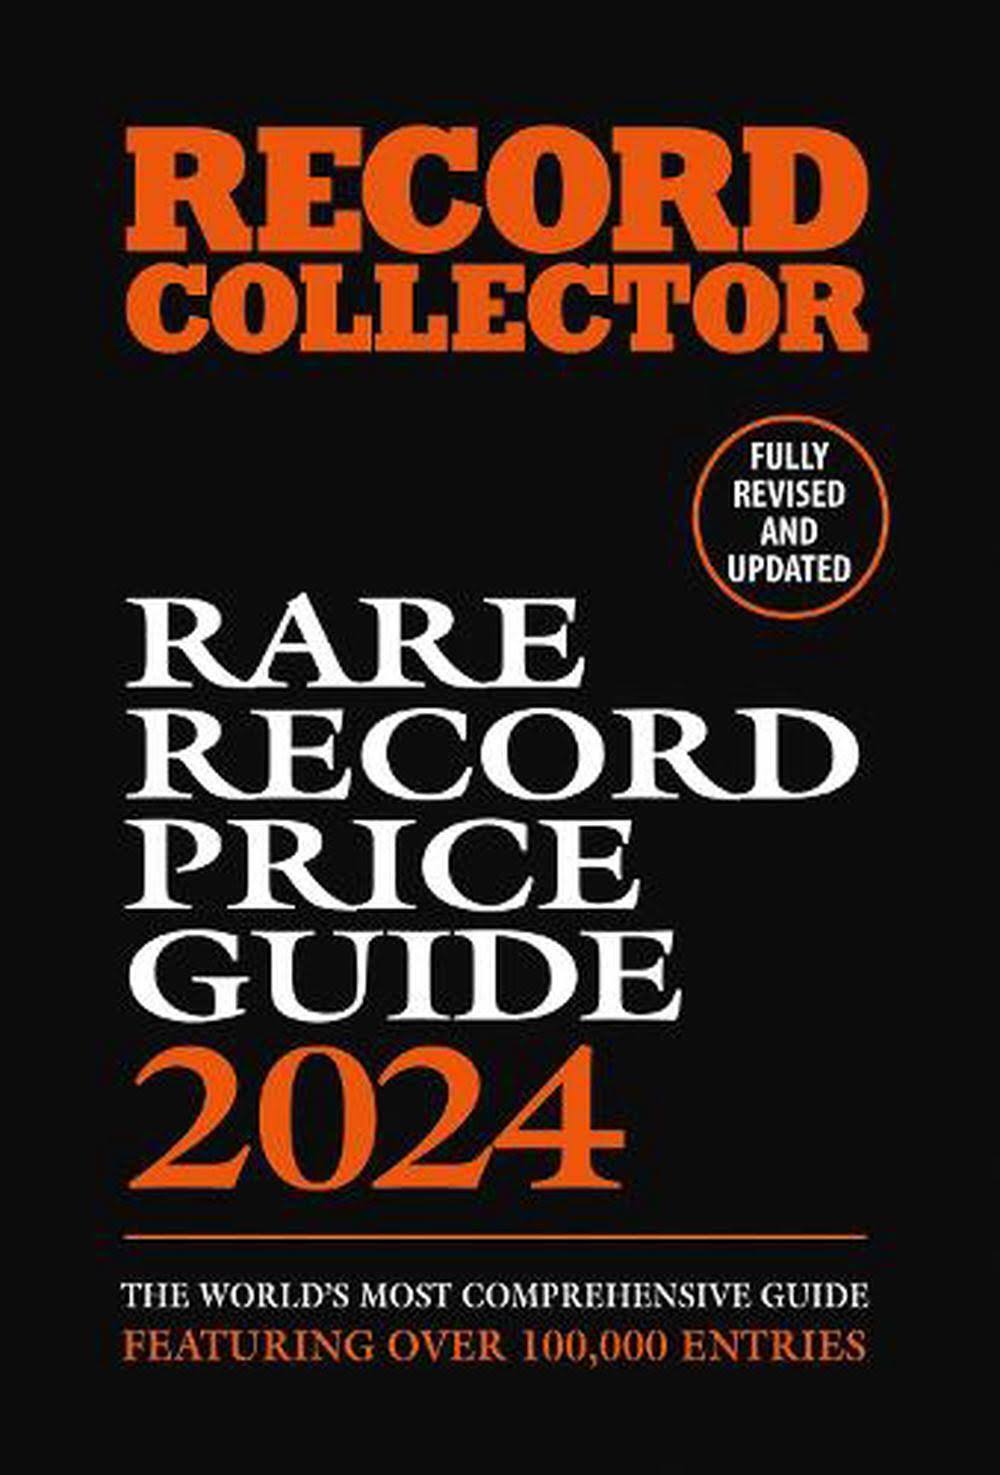 The Rare Record Price Guide 2024 [Book]